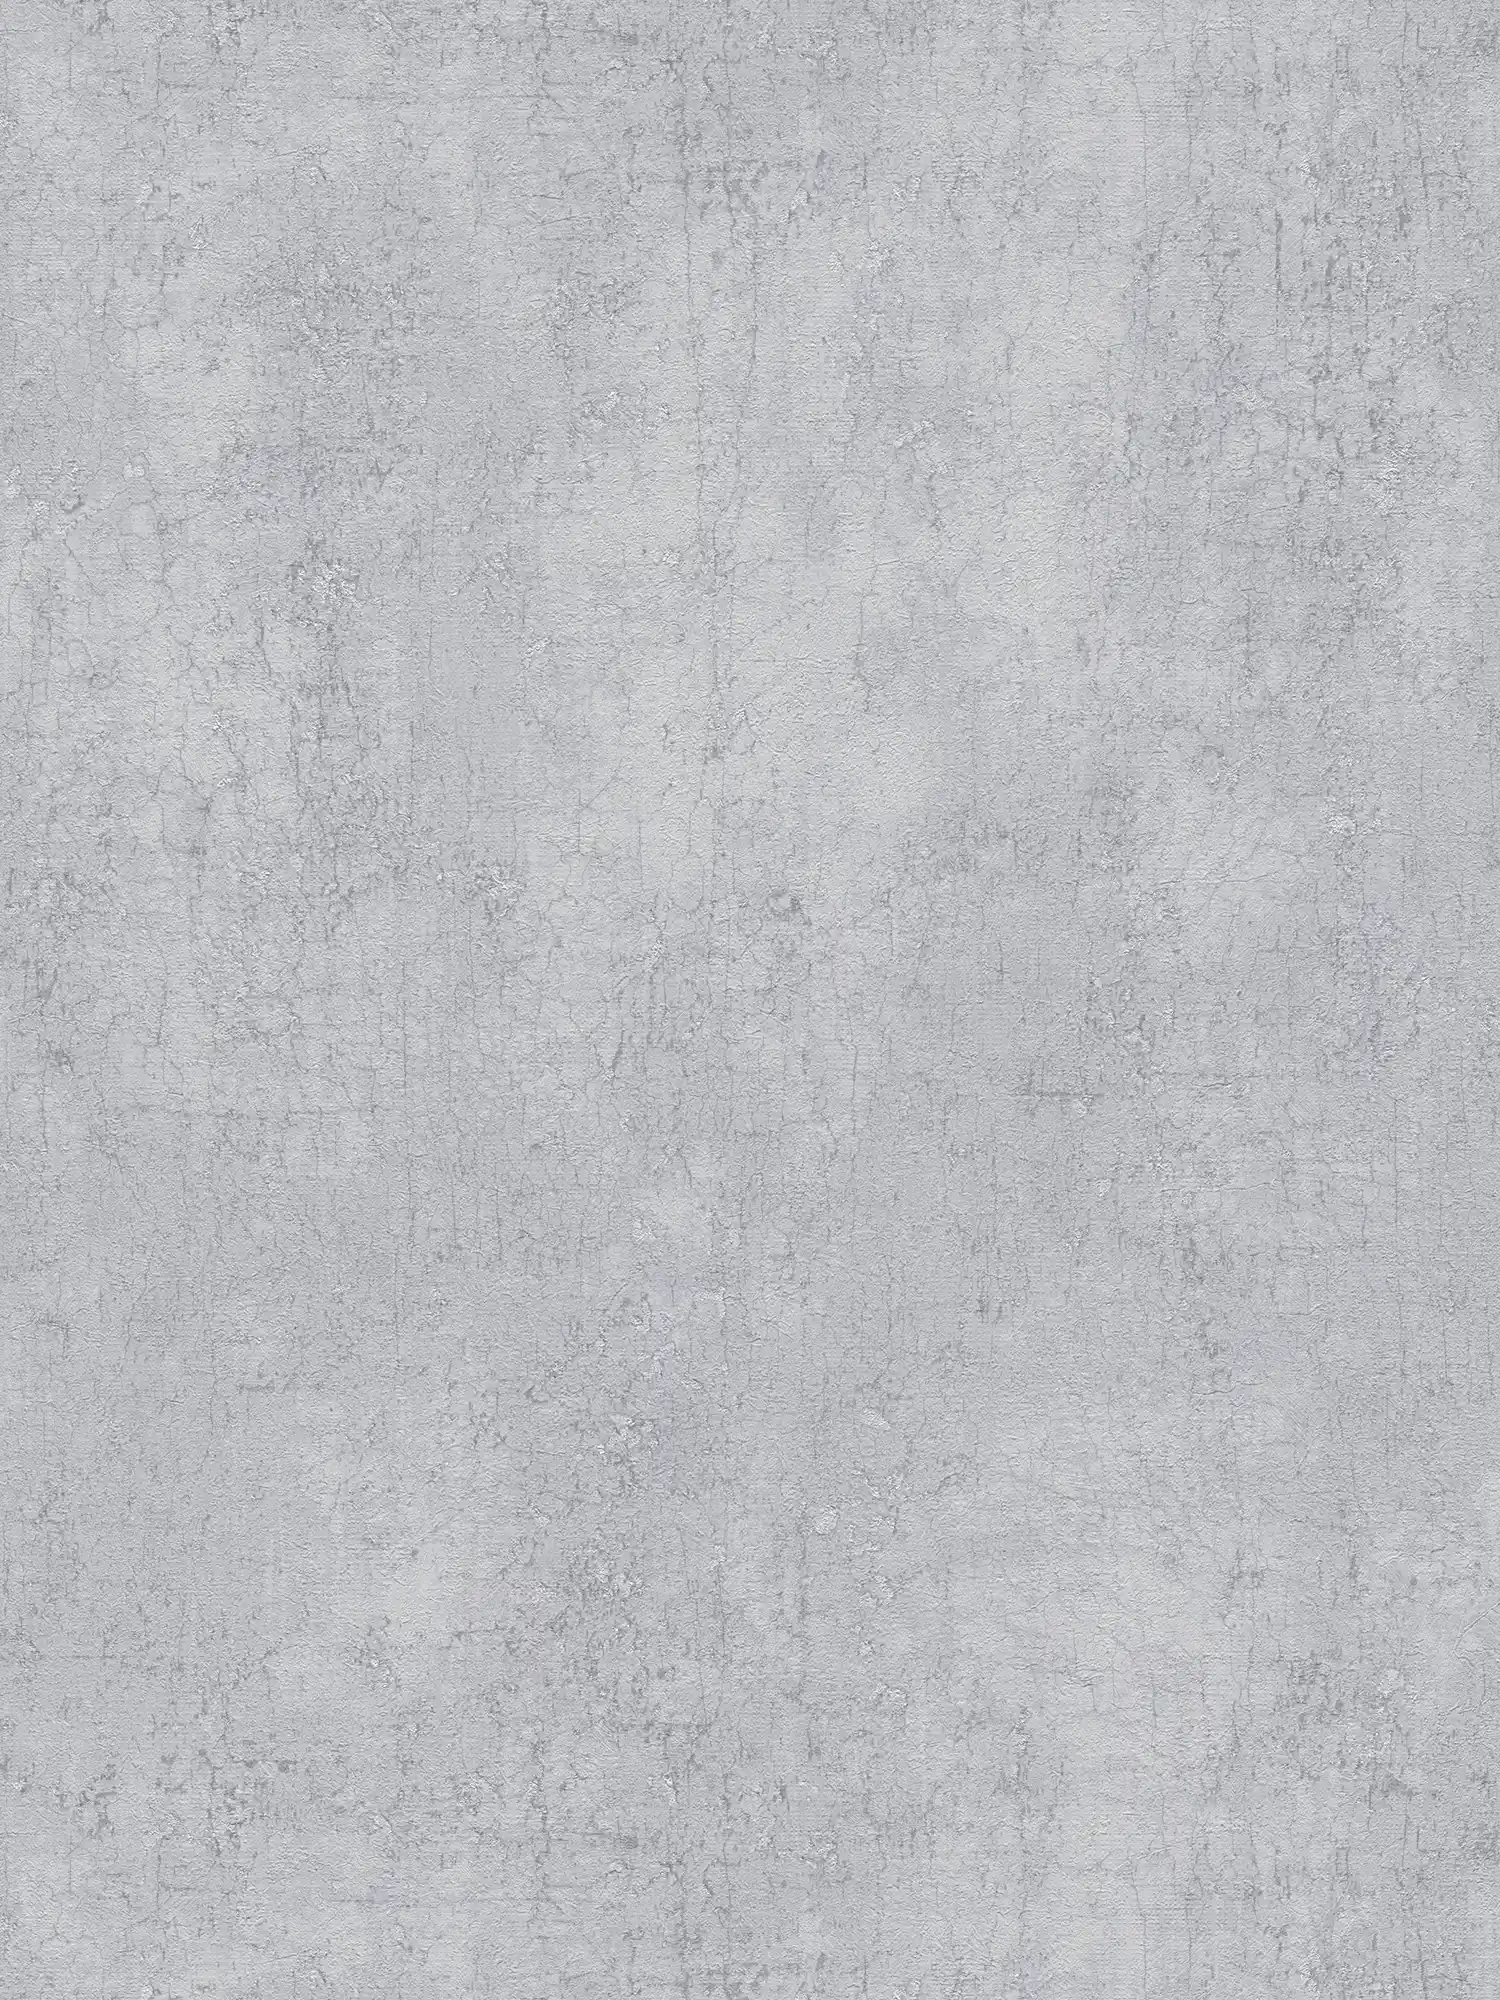 Papel pintado de yeso óptico gris piedra con detalles plateados - gris, metálico
